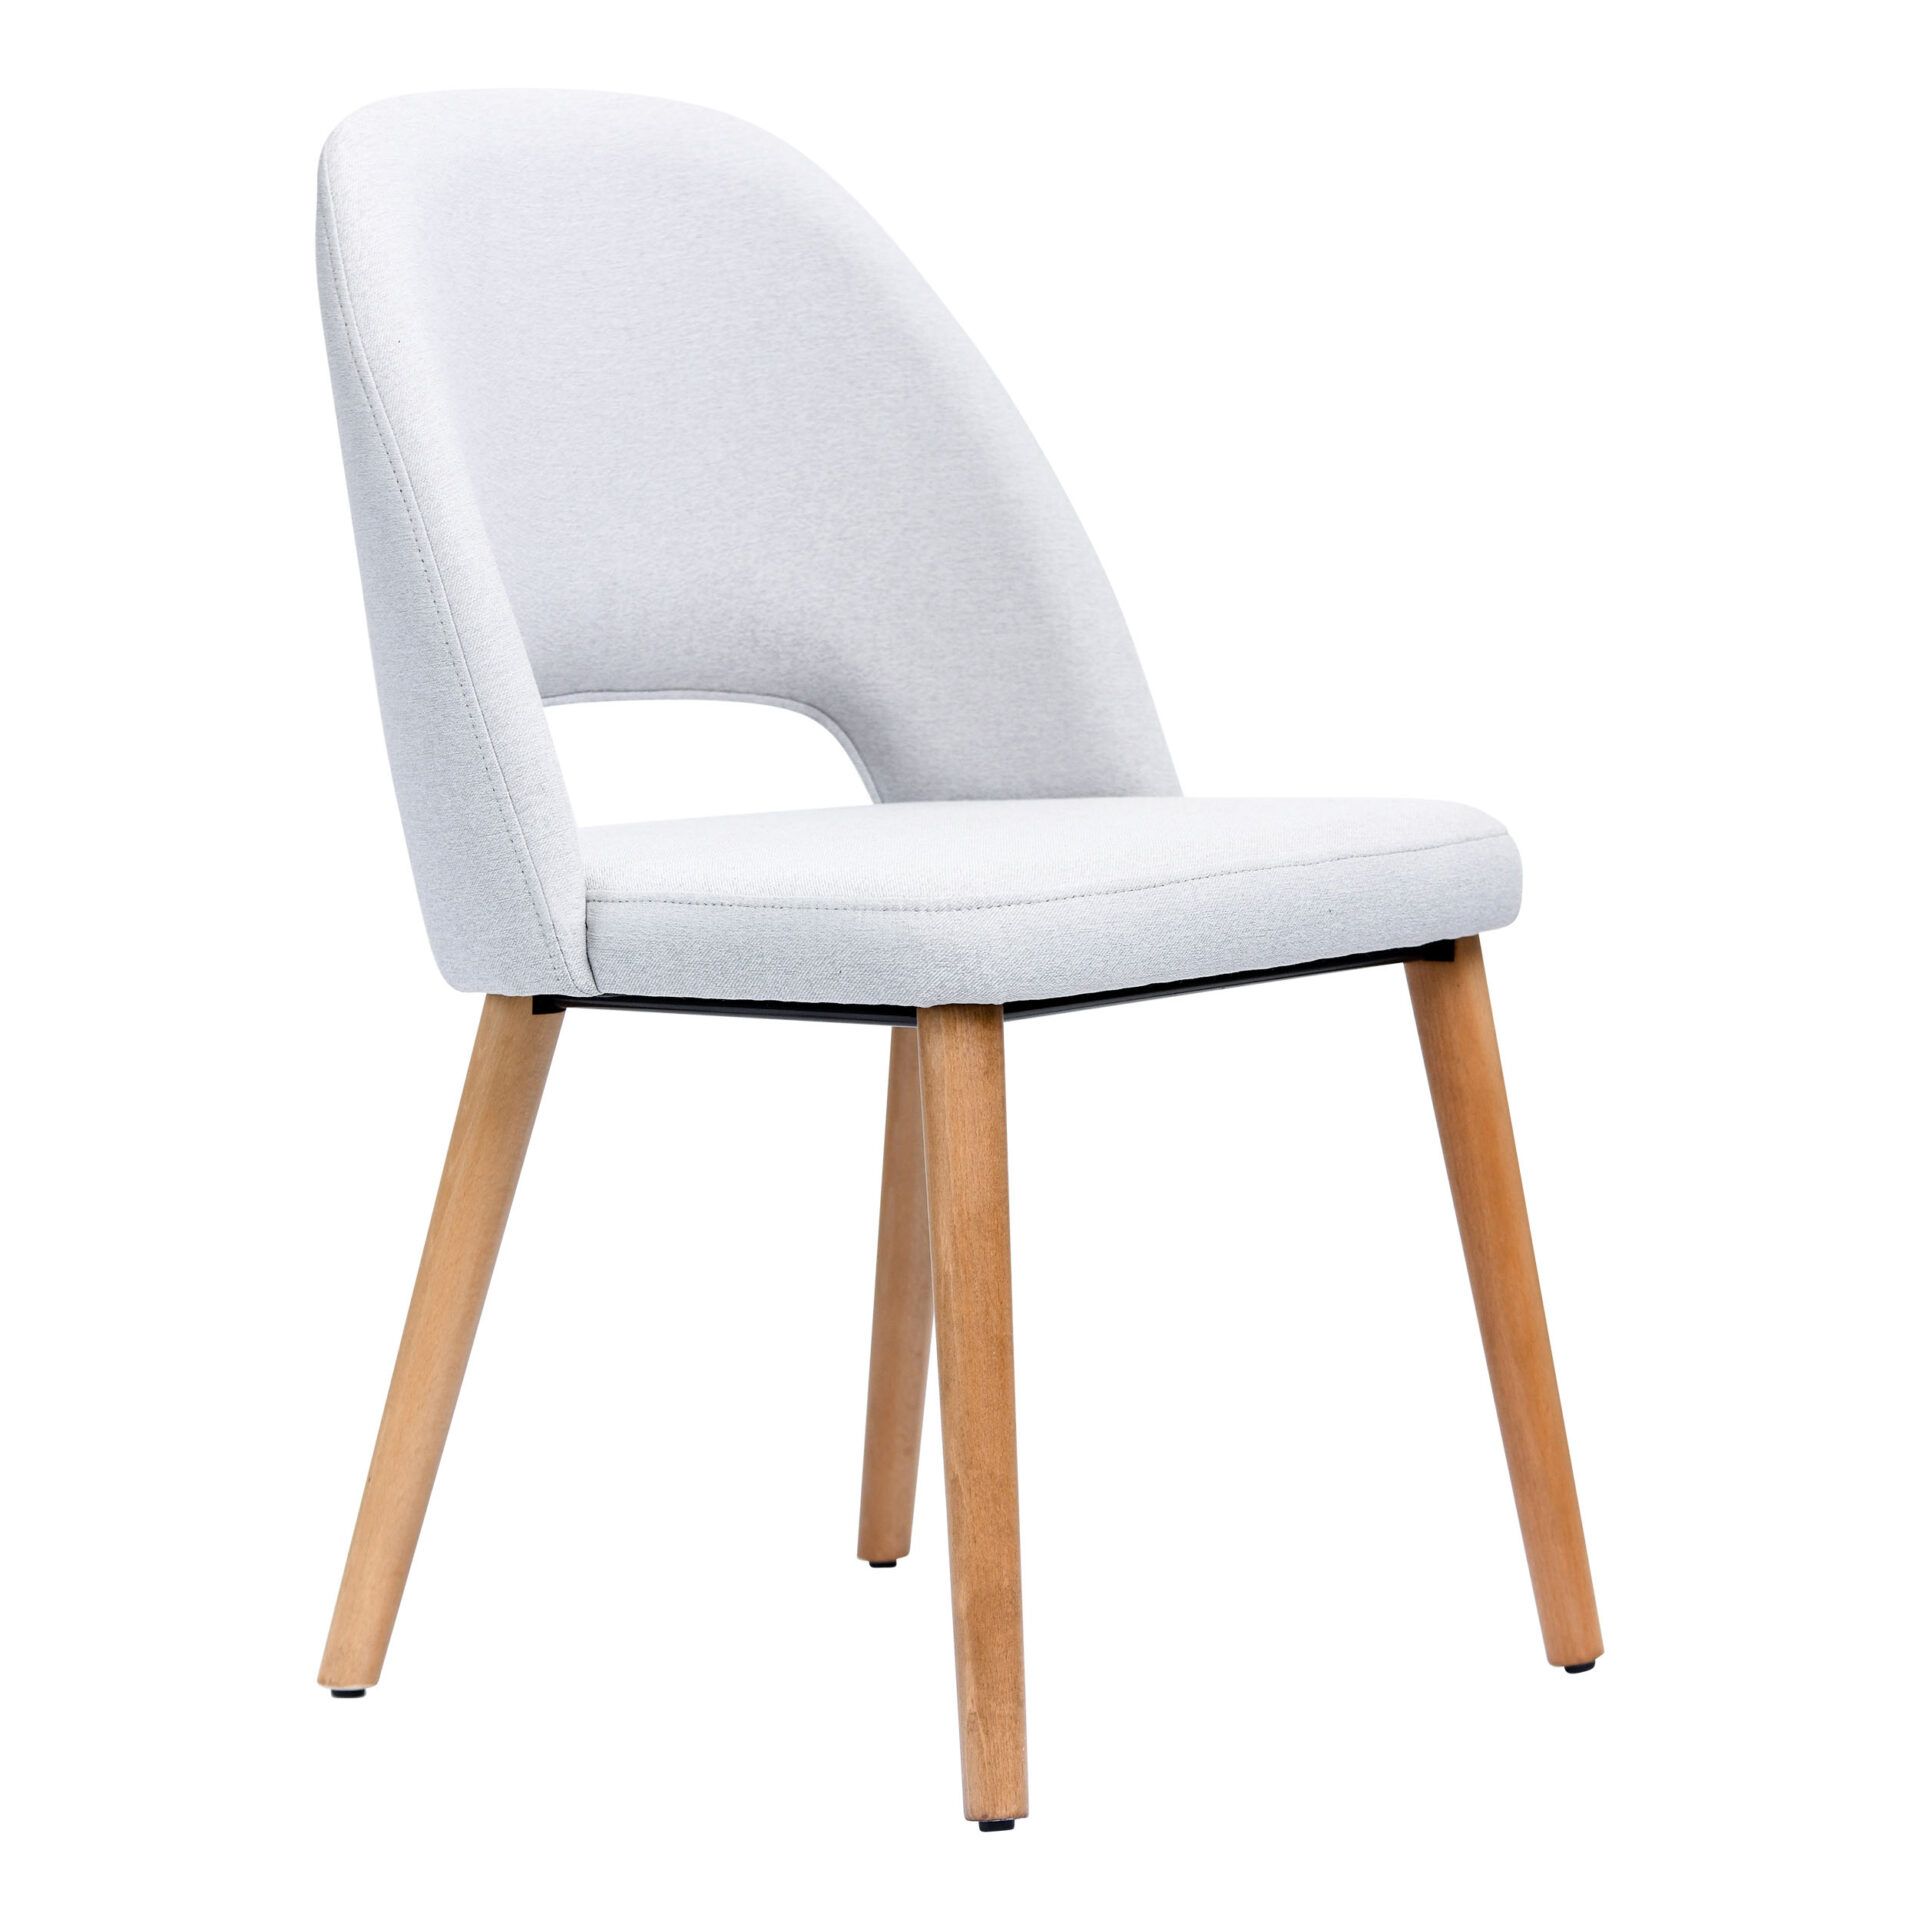 Semifreddo Chair - Trojan Oak Legs/ Light Grey Woven Fabric